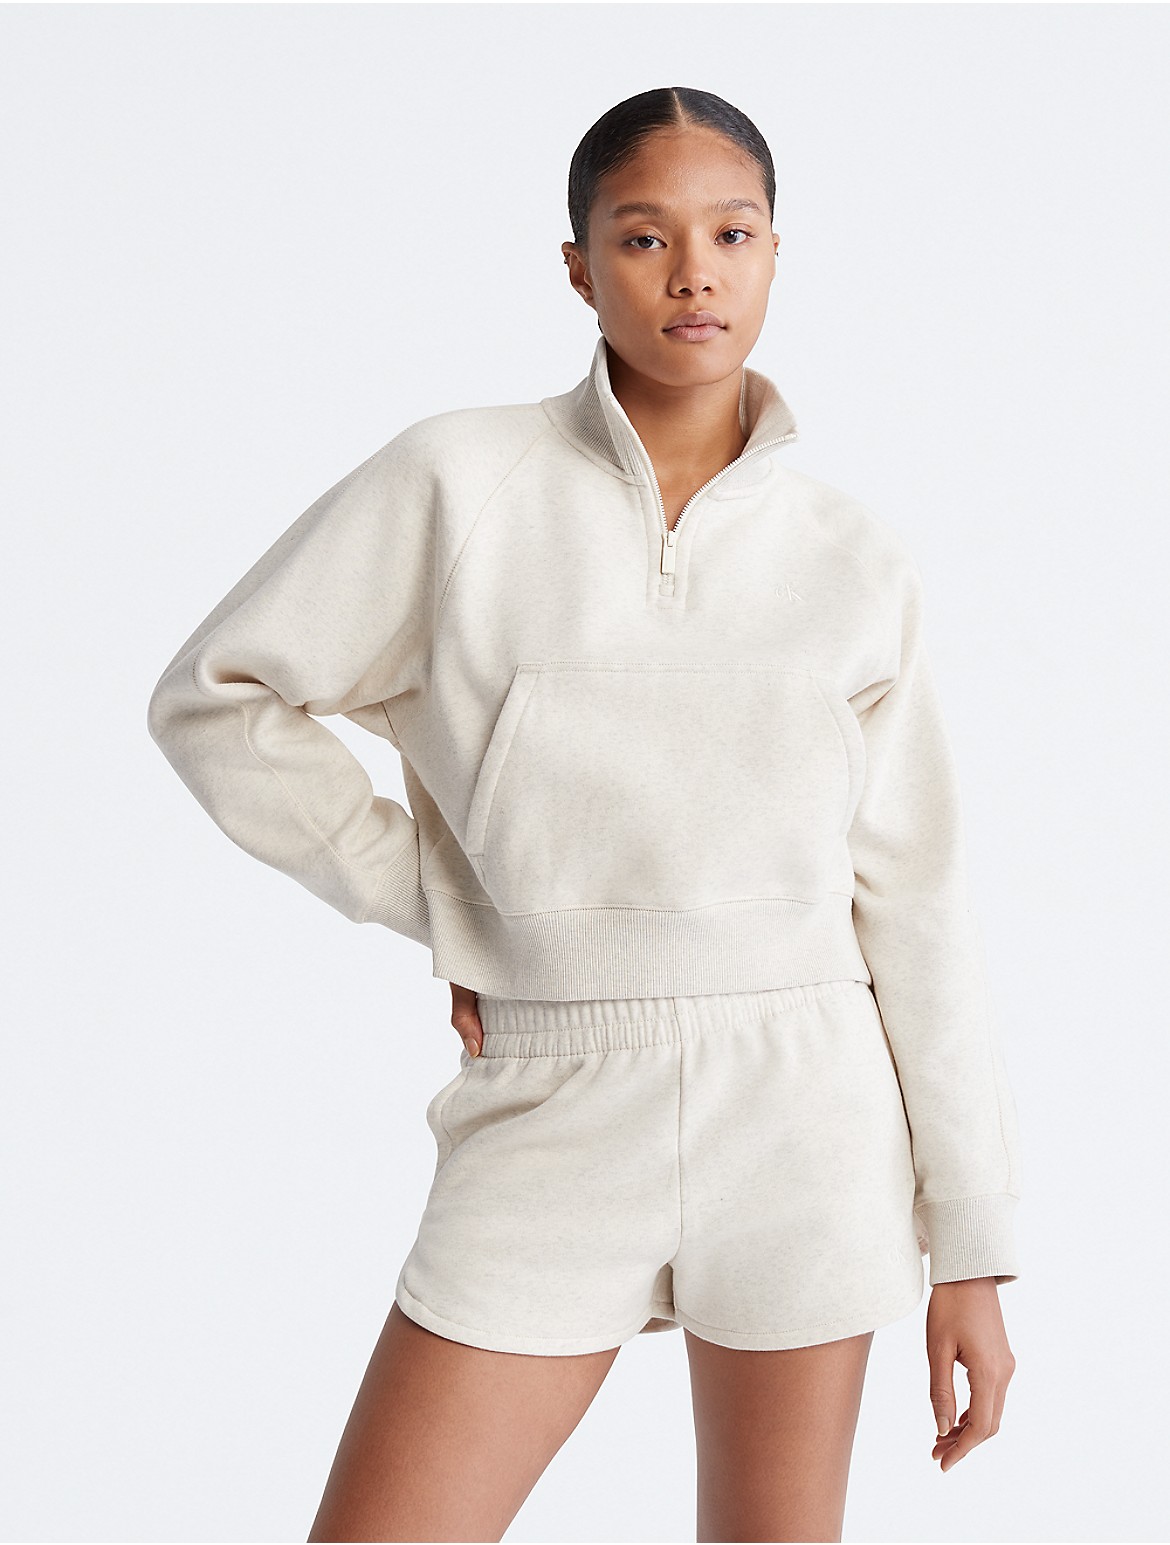 Calvin Klein Women's Archive Logo Fleece Quarter Zip Sweatshirt - Ivory - S